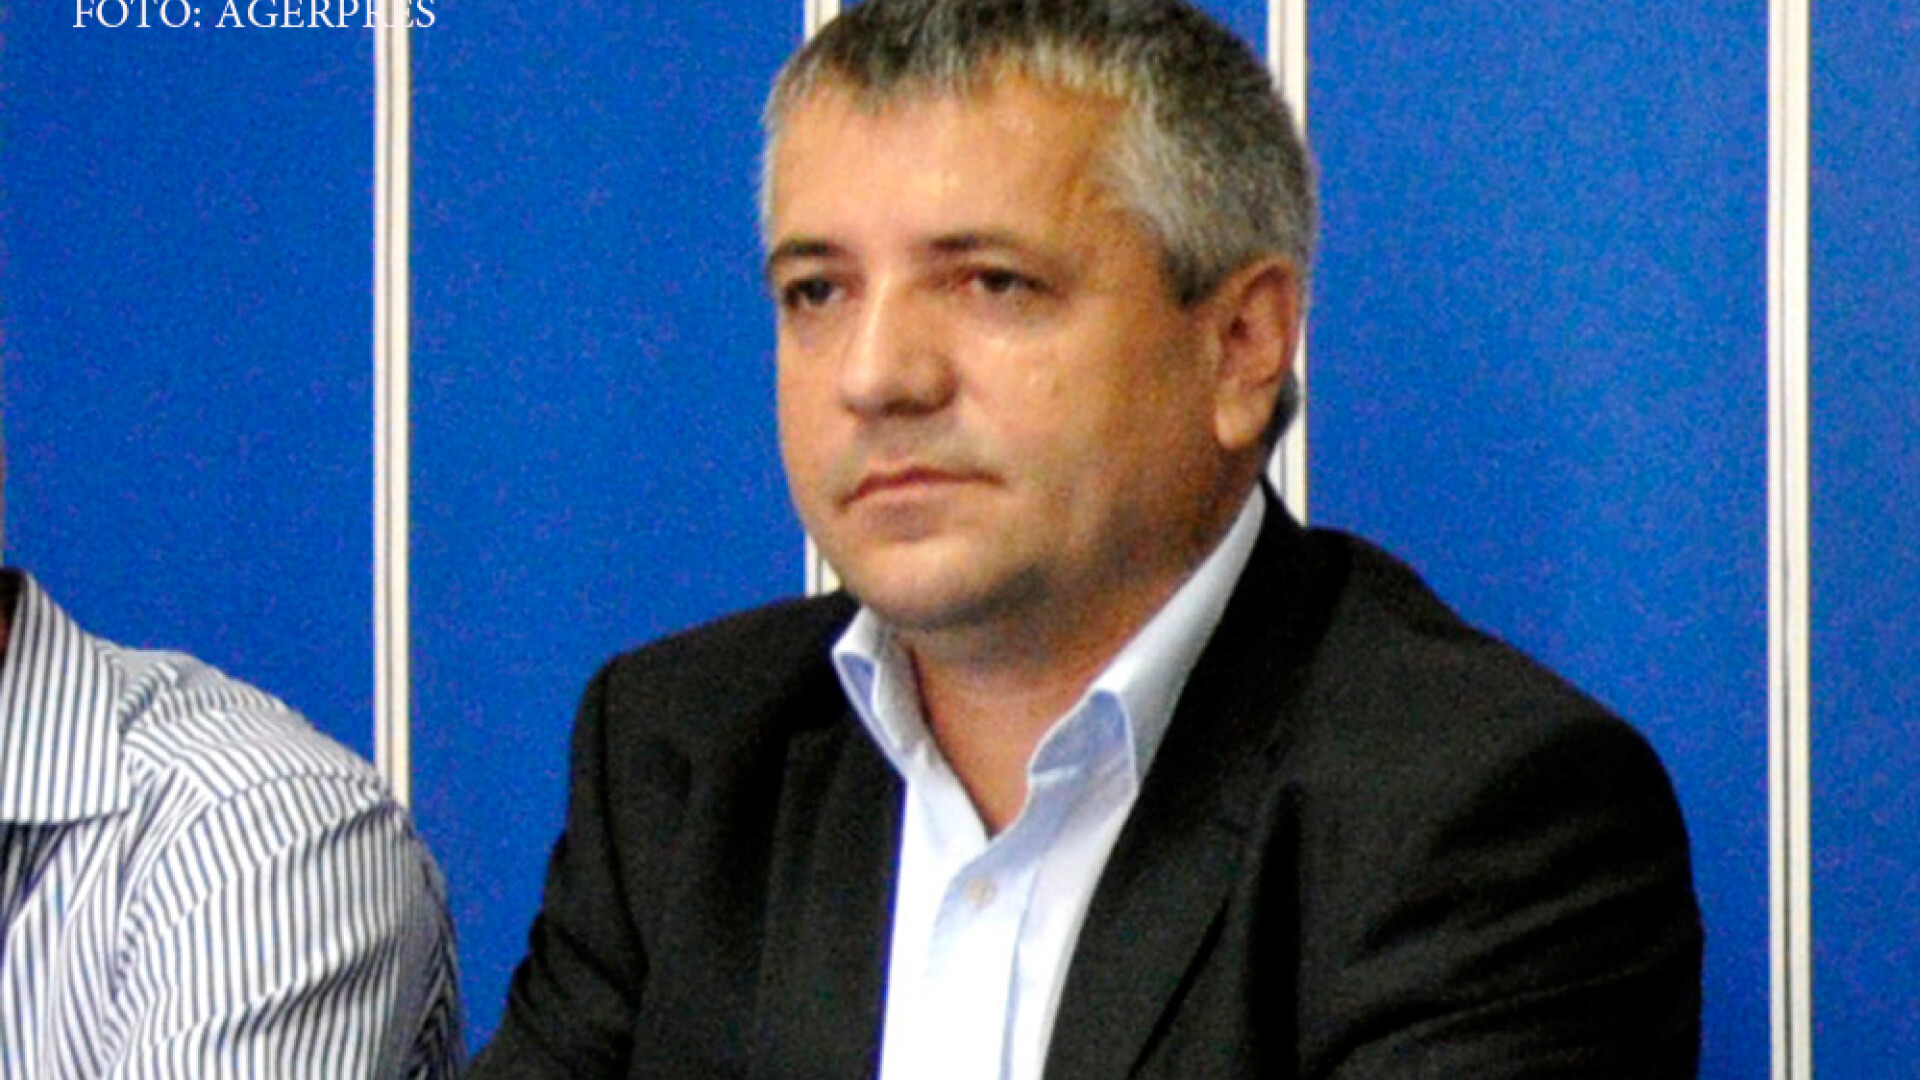 Marius Screciu, primar Drobeta Turnu Severin